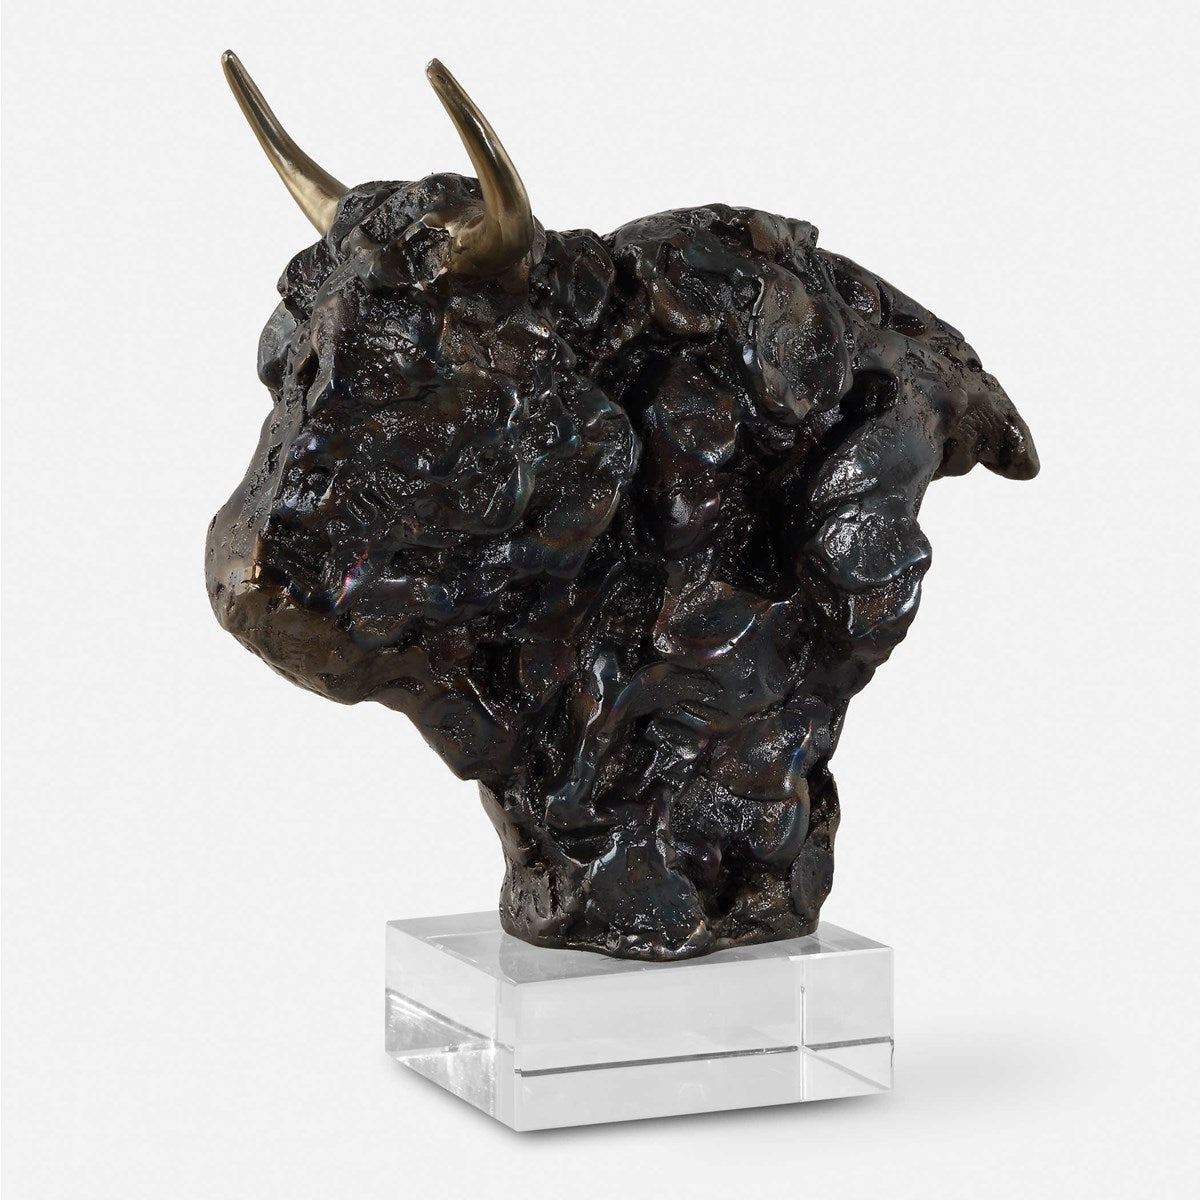 Uttermost - 18148 - Sculpture - Bison - Tarnished Bronze